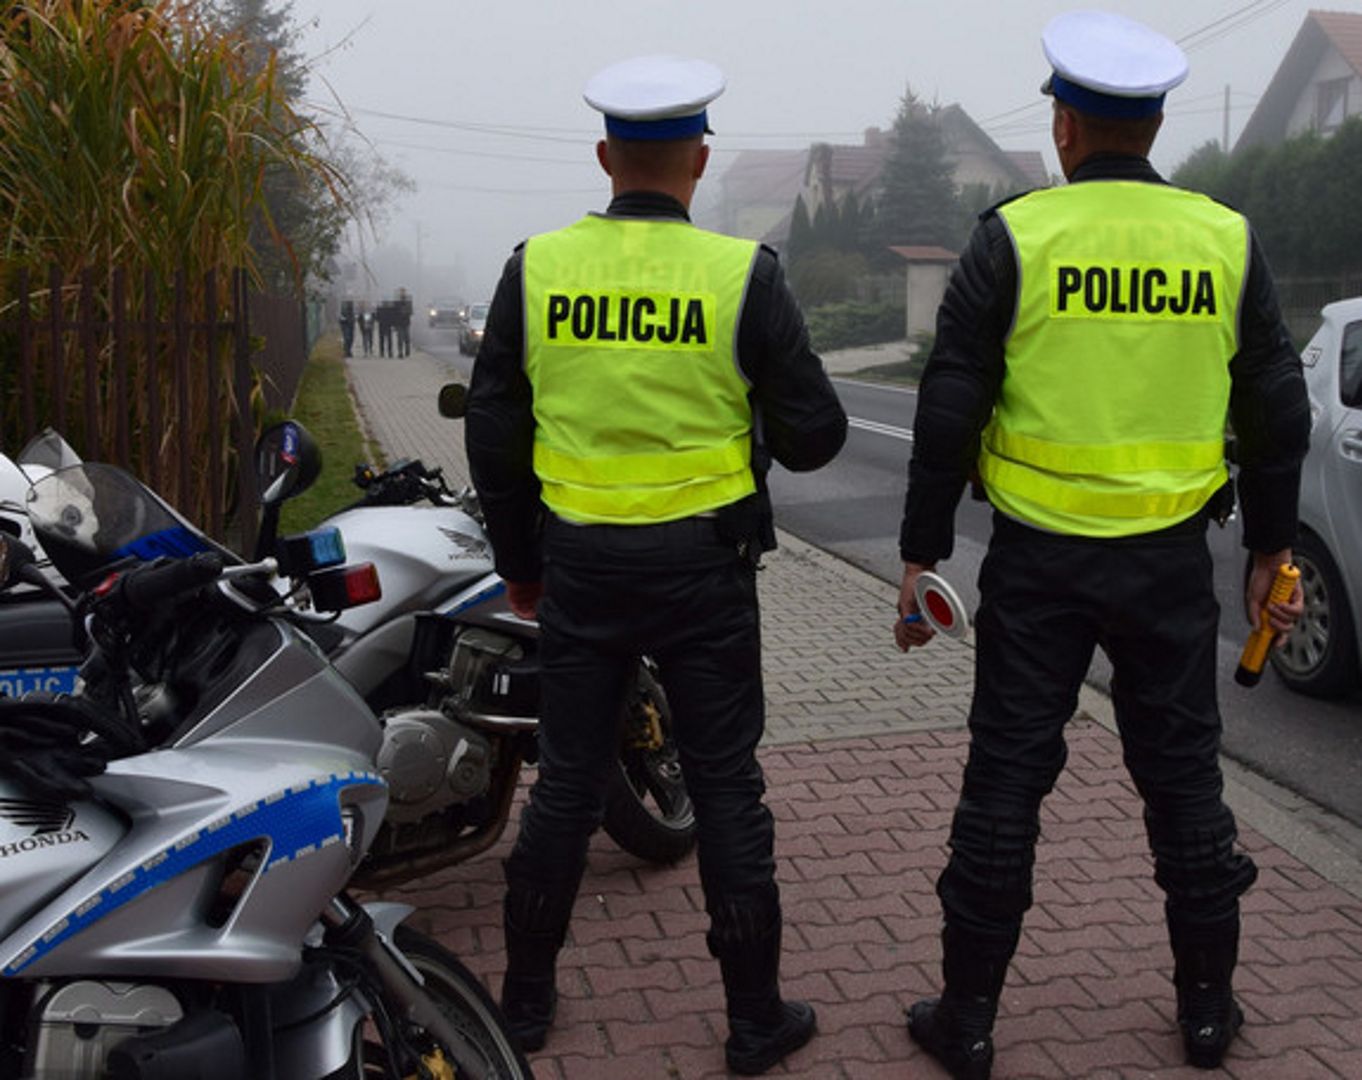 Akcja policji w Małopolsce. Potrwa do 25 lutego.